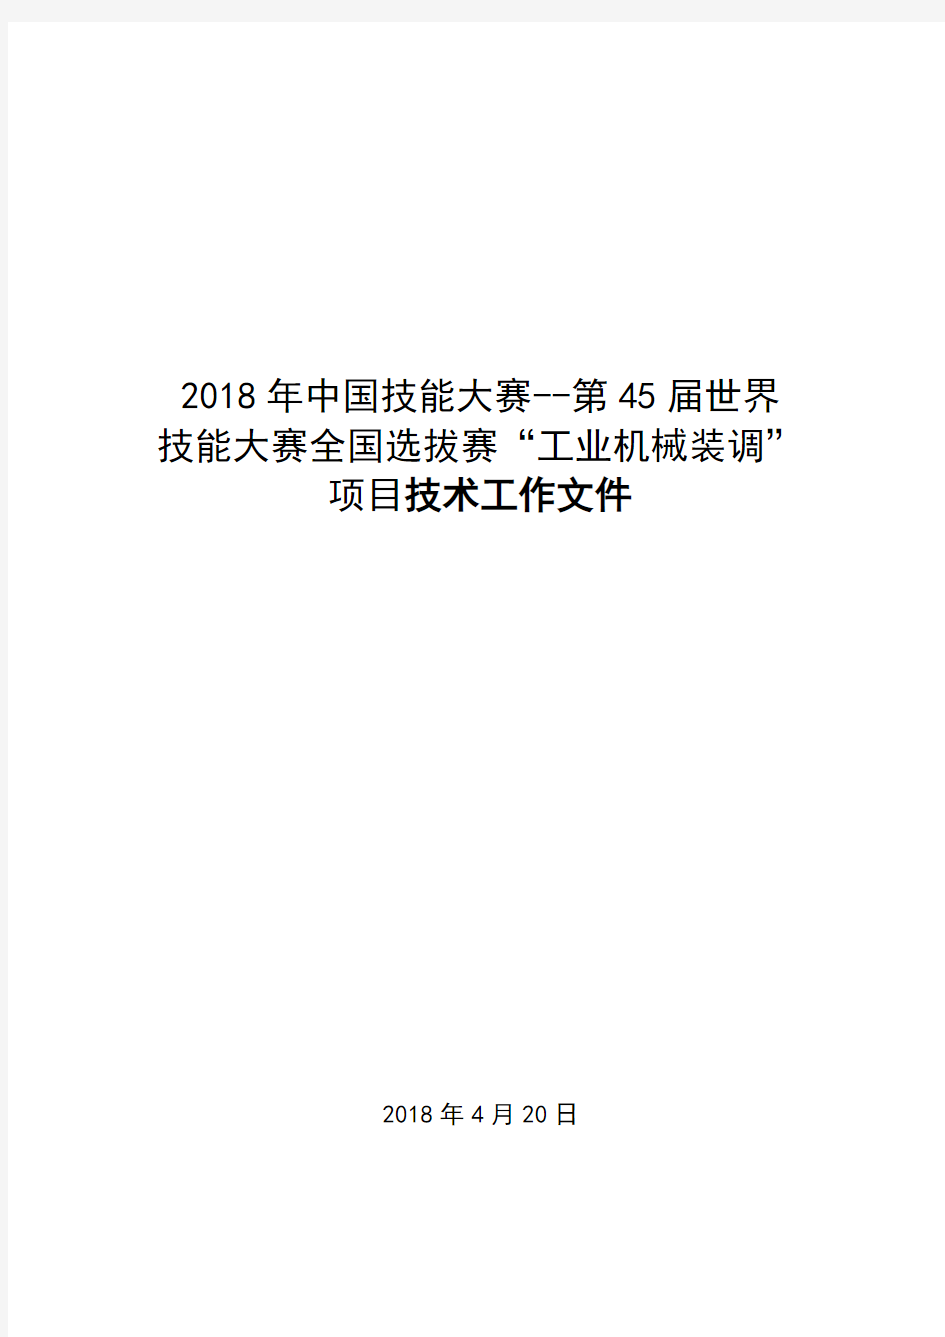 2018年中国技能大赛——第45届世界技能大赛工业机械装调项目全国选拔赛技术文件(2018-5-11)